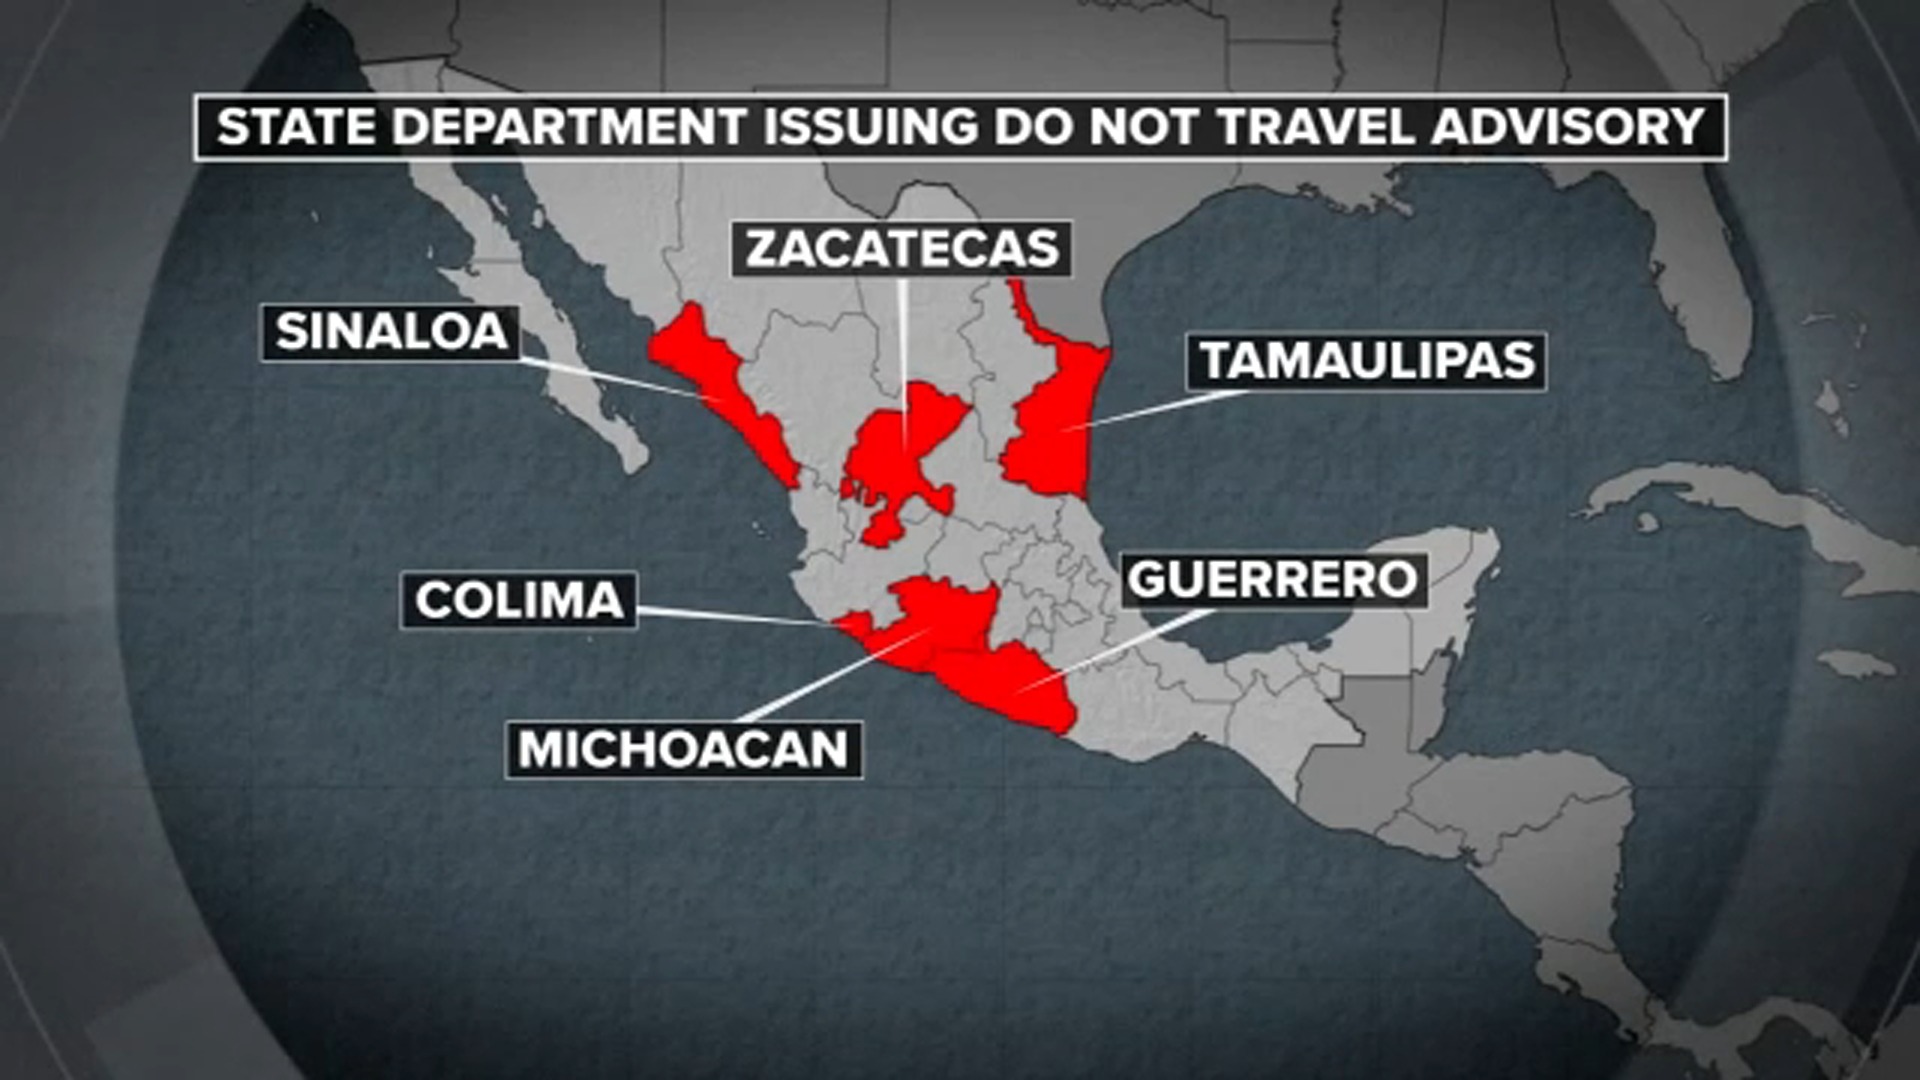 mexico travel advisory today